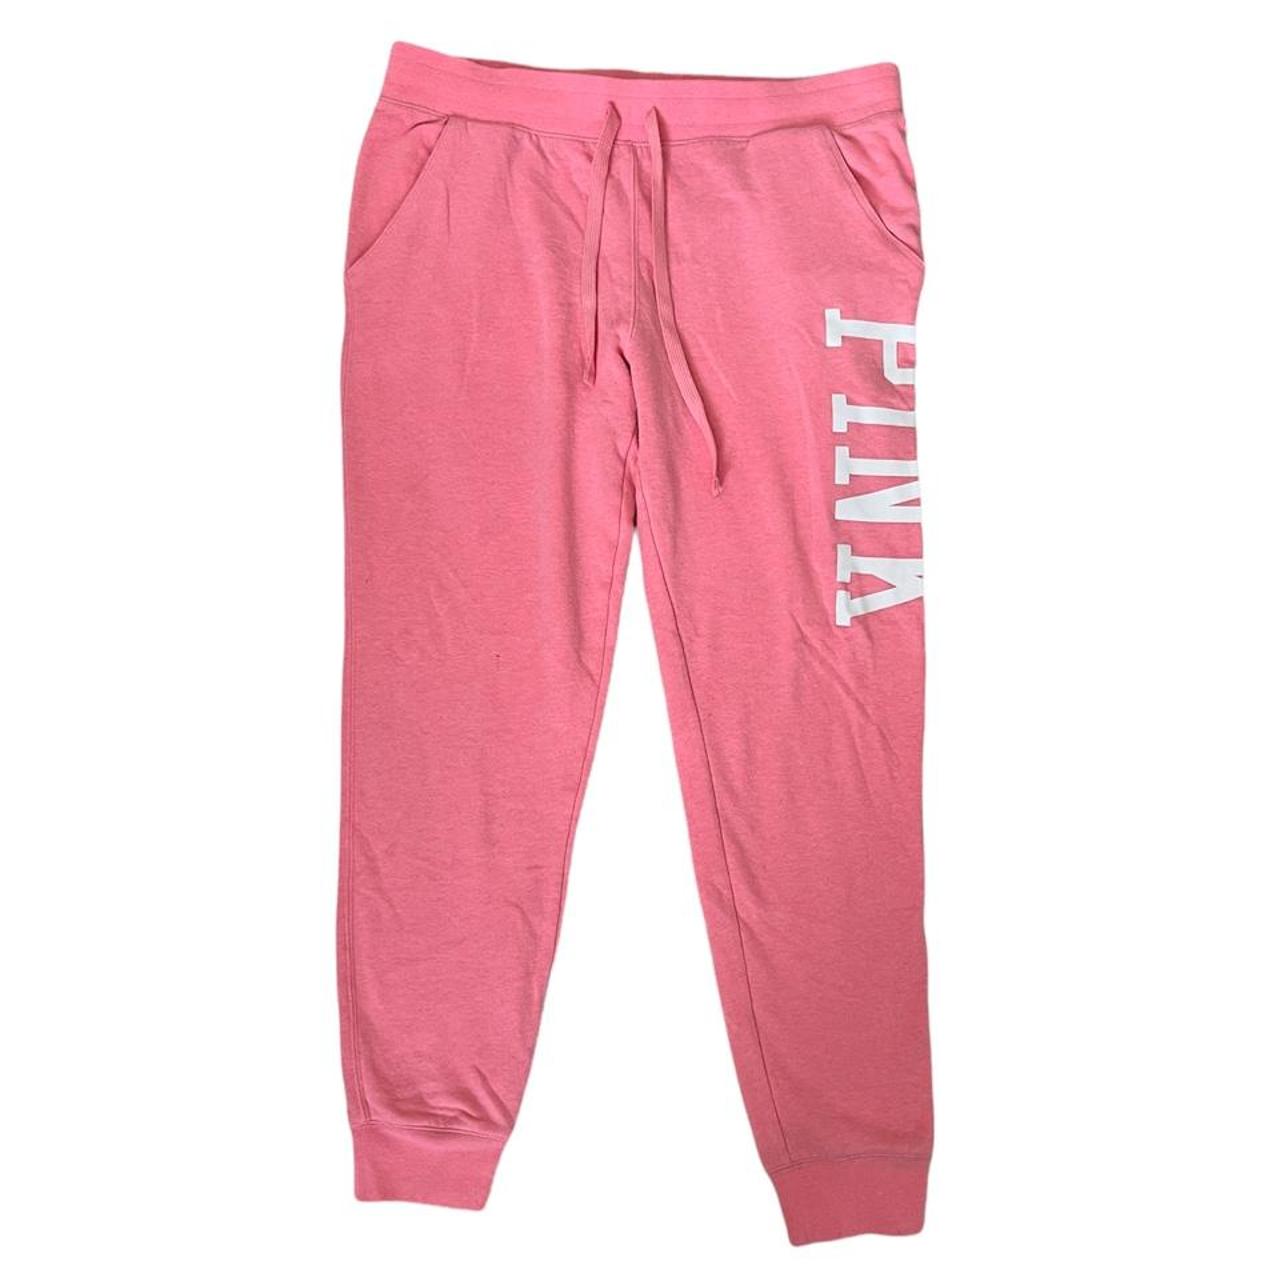 PINK Victoria’s Secret sweatpants size large pink